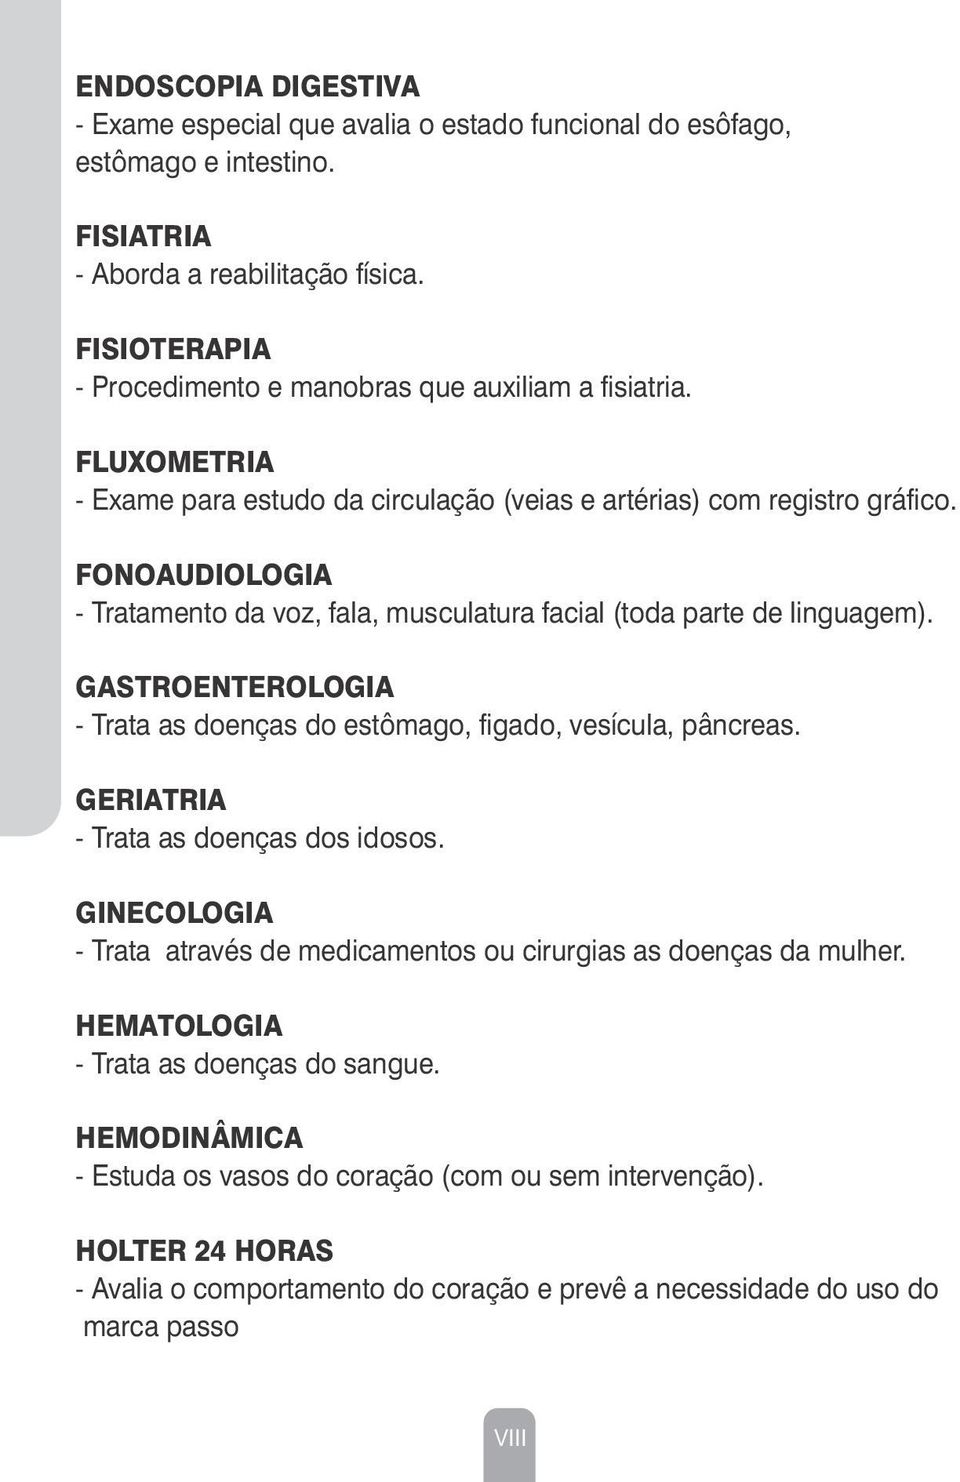 FONOAUDIOLOGIA - Tratamento da voz, fala, musculatura facial (toda parte de linguagem). GASTROENTEROLOGIA - Trata as doenças do estômago, figado, vesícula, pâncreas.